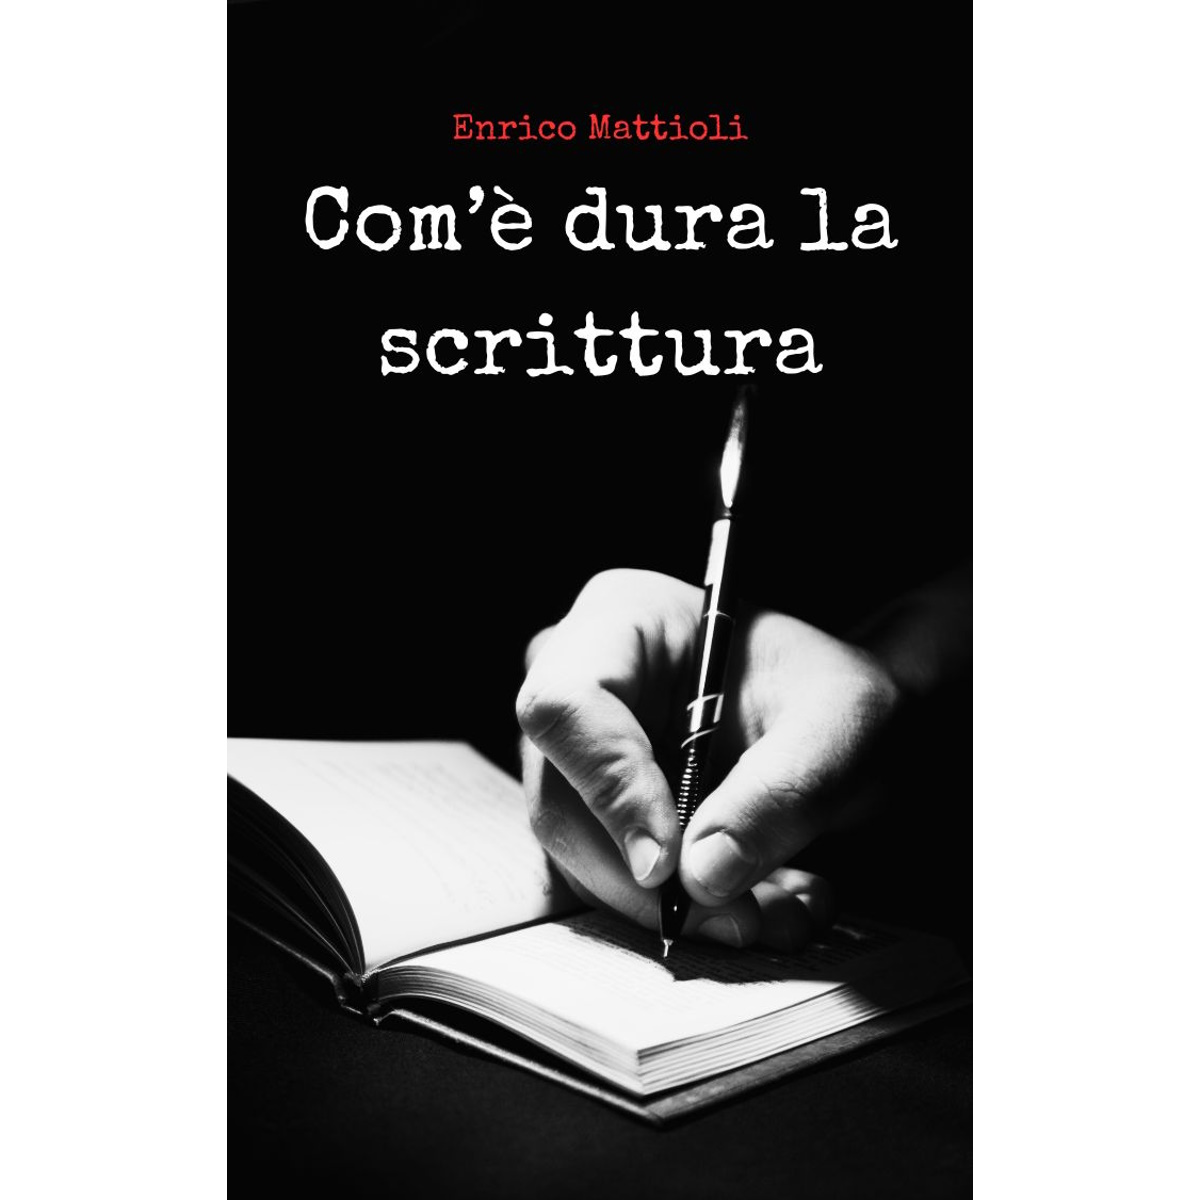 Com’è dura la scrittura — Enrico Mattioli — Chi è uno scrittore?